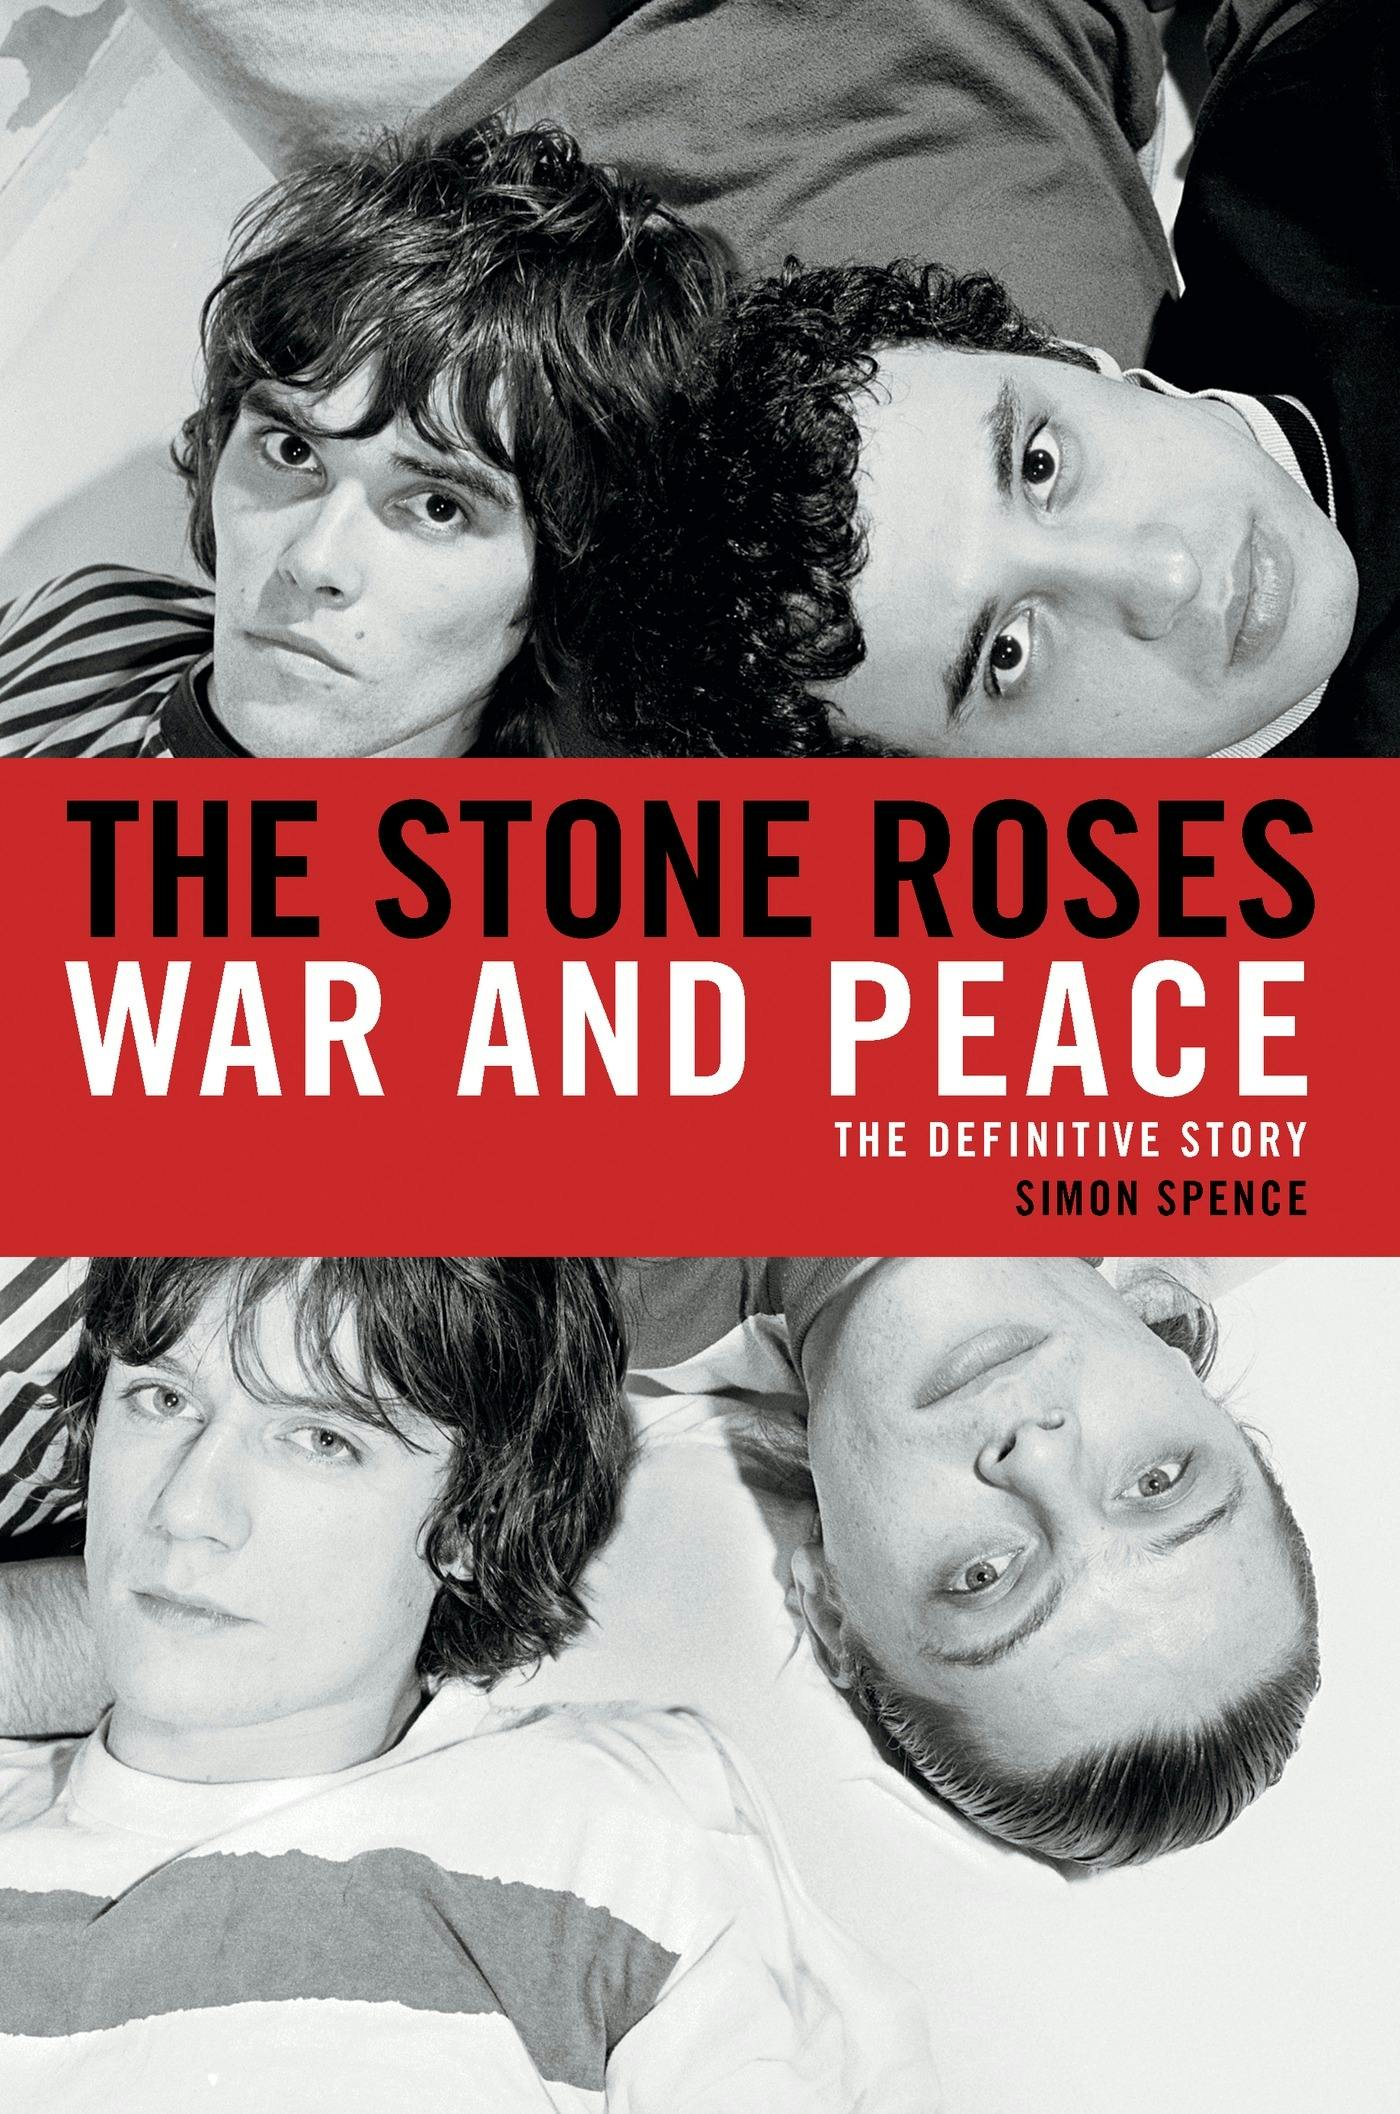 The Stone Roses photo image